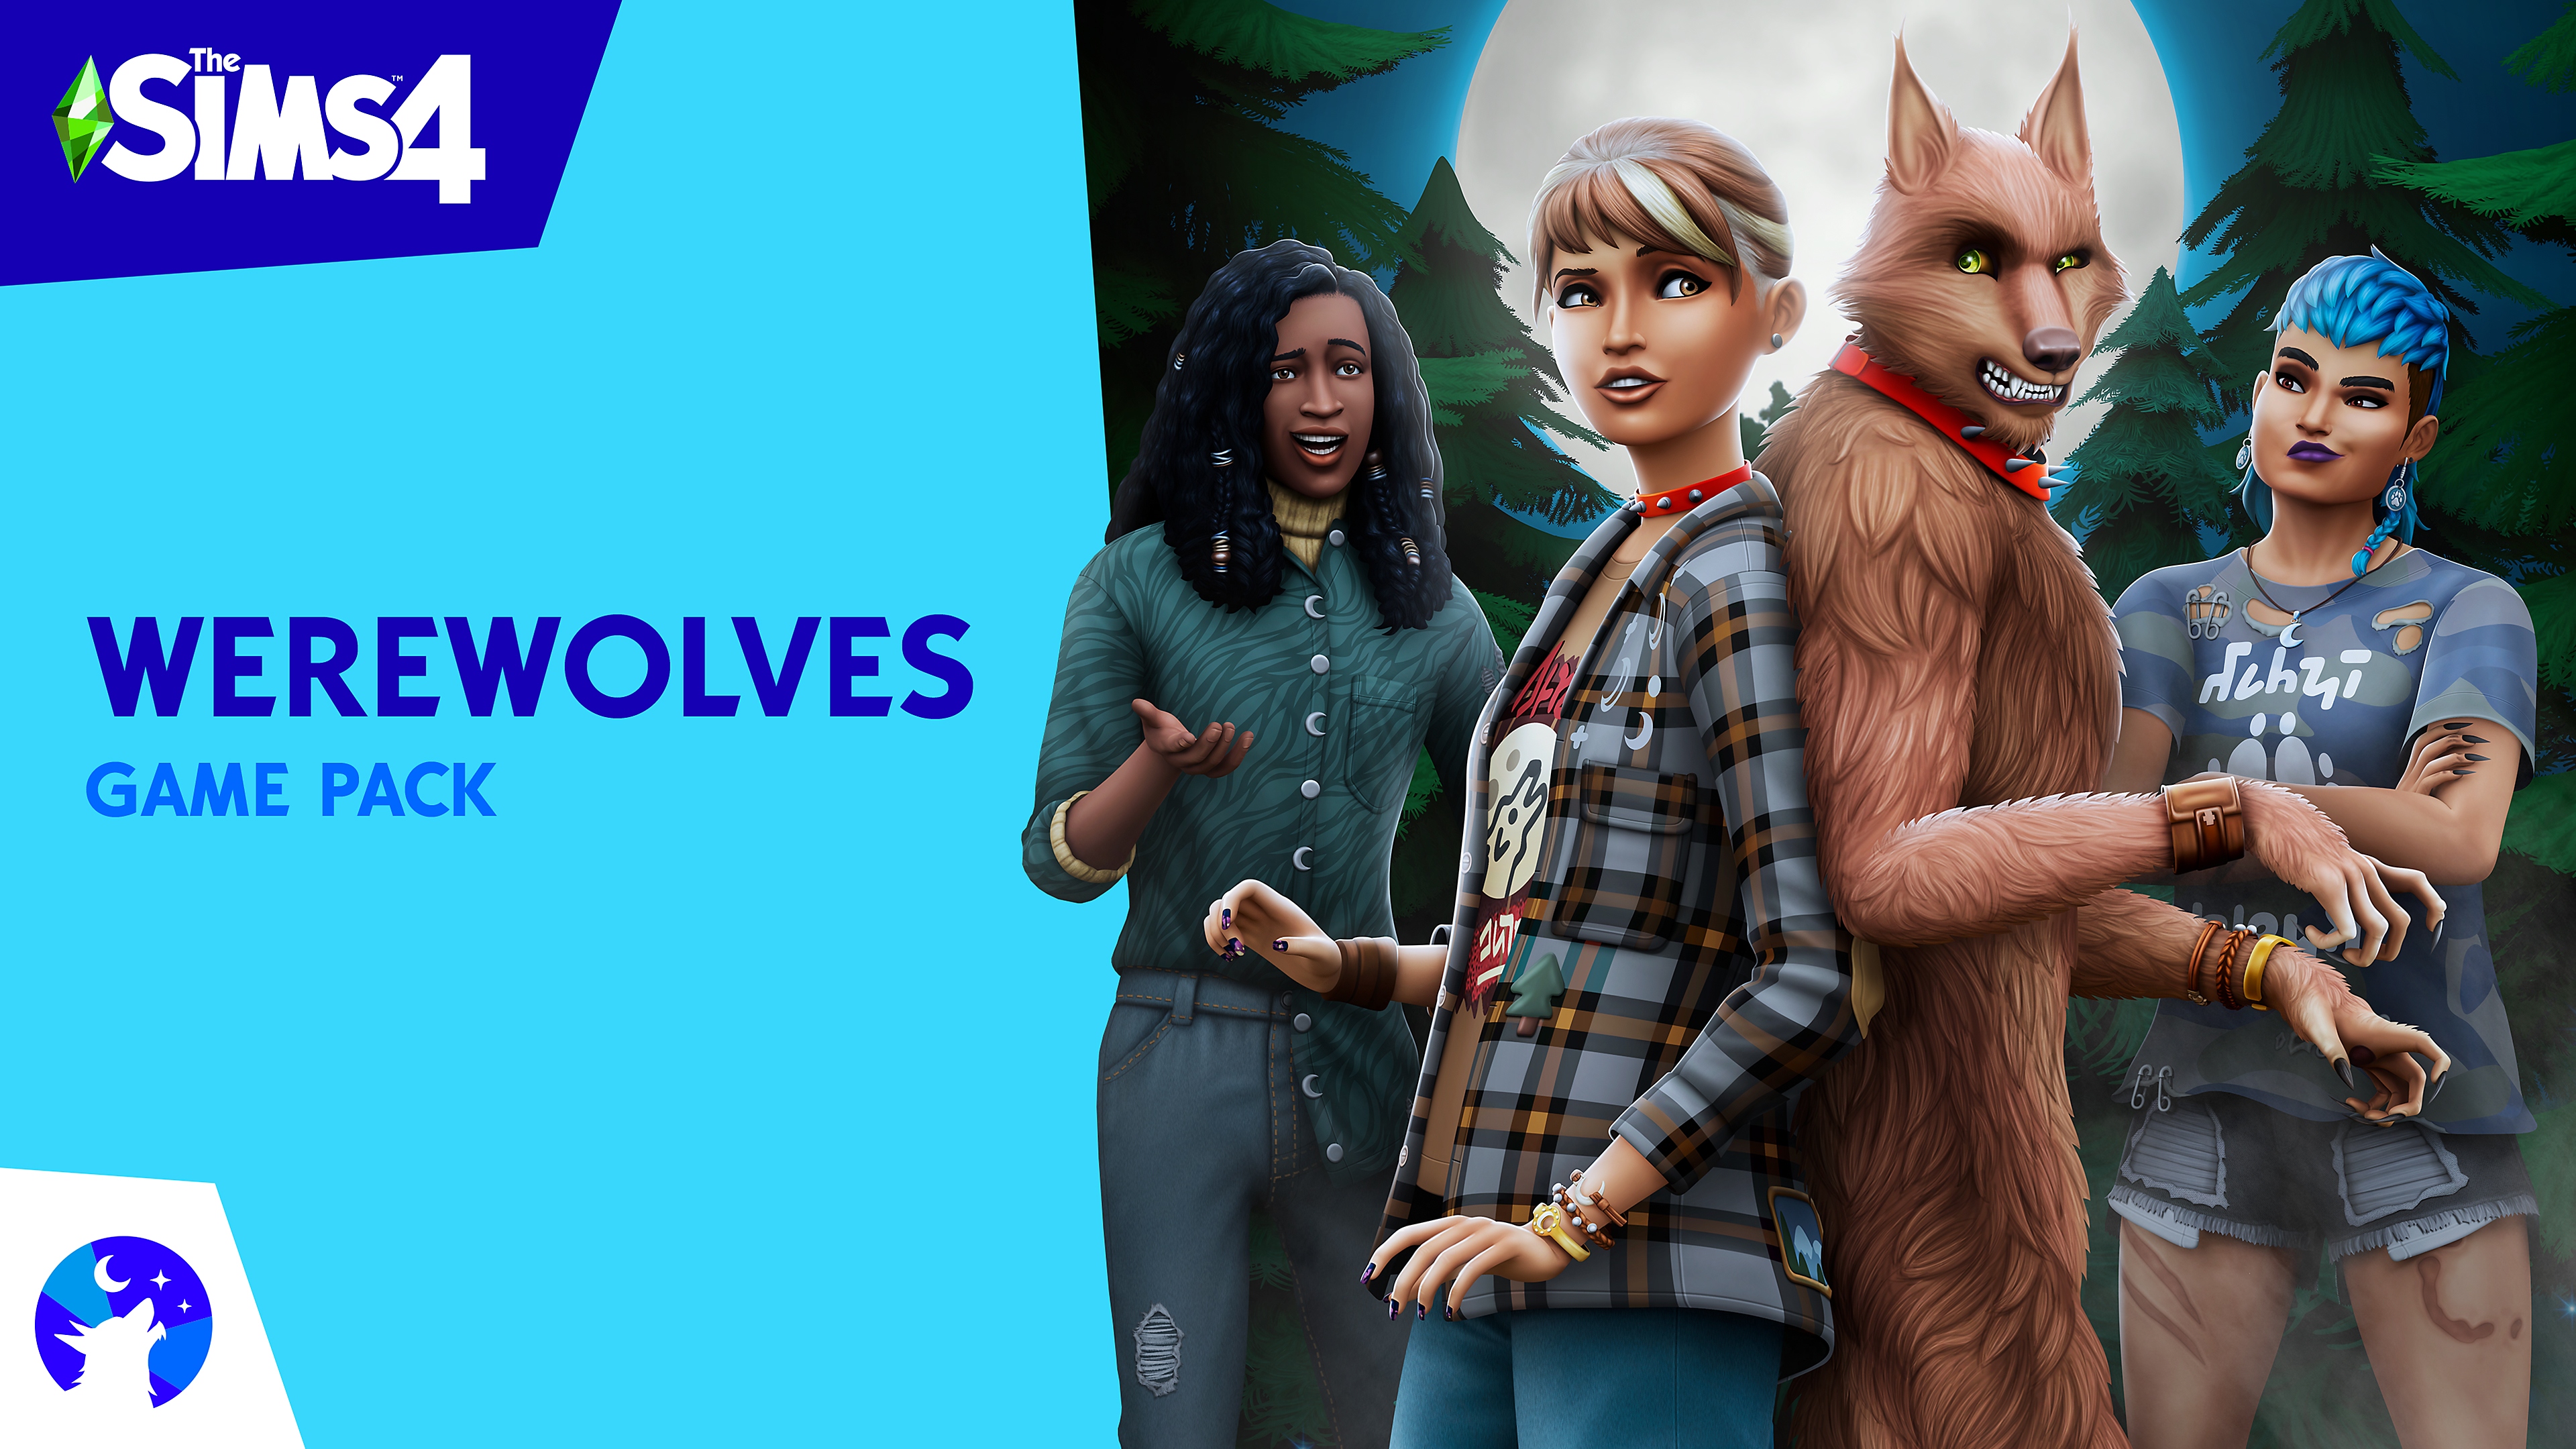 Illustrasjon fra The Sims 4-spillpakken Werewolves med Sims-figurer og en varulv